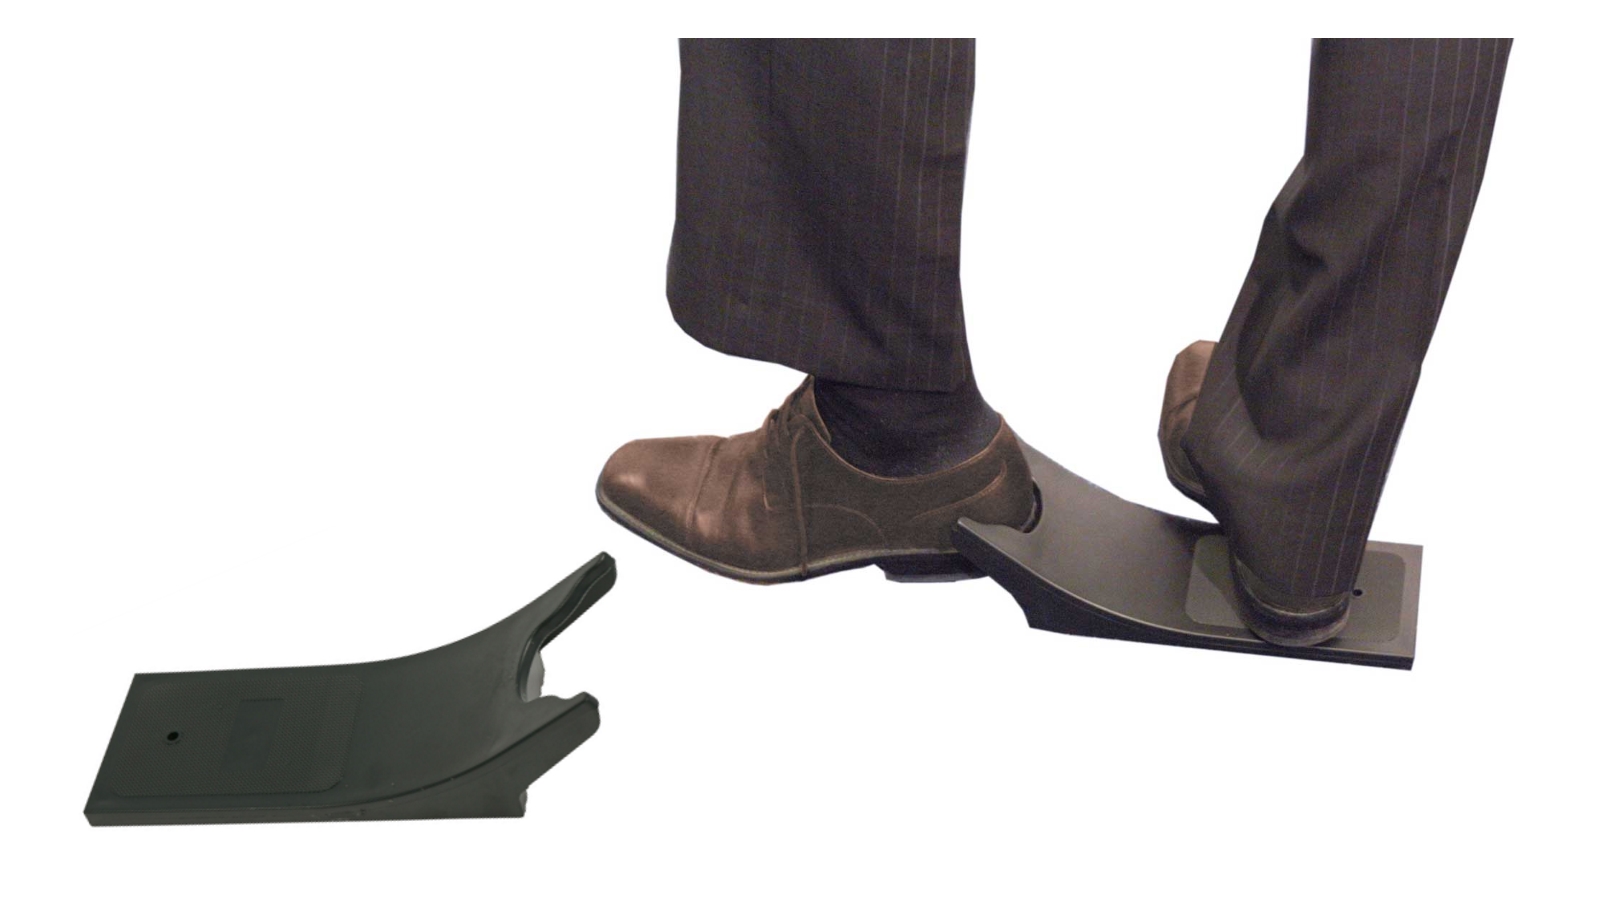 Ein Schuhauszieher wird vorgeführt: Brett, nach oben gebogen und oben mit halbrundem Ausschnitt. Zum Ausziehen steht ein Fuß auf der flachen Pattform, die Schuhferse des anderen Fußes wird in dien Ausschnitt gesteckt und der Schuh ausgezogen.